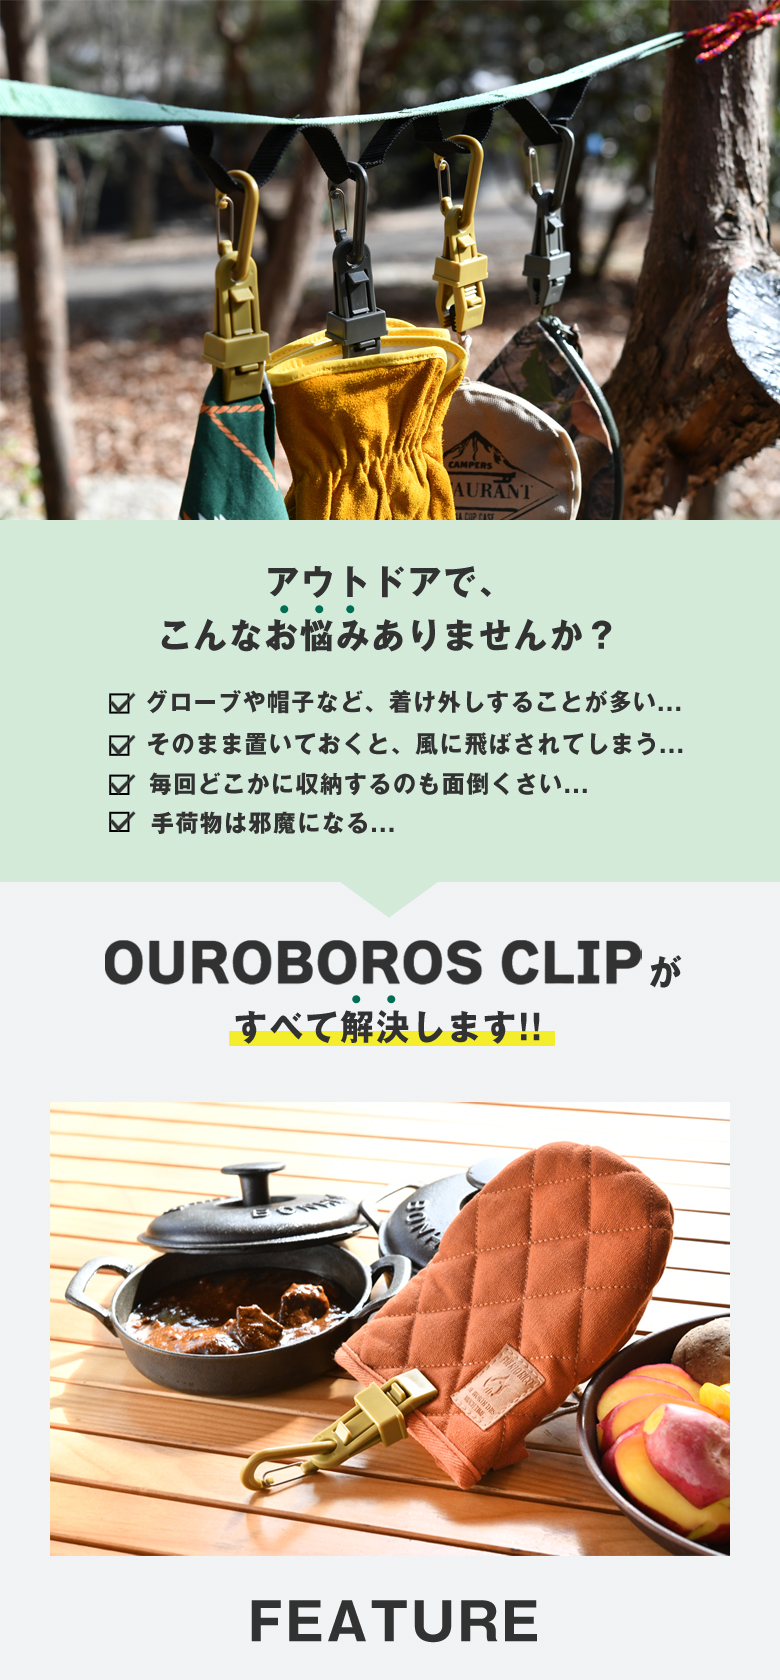 【楽天市場】OUROBOROS CLIP ウロボロスクリップ カラビナクリップ おしゃれ カラビナ付きクリップ 高性能クリップ クリップ